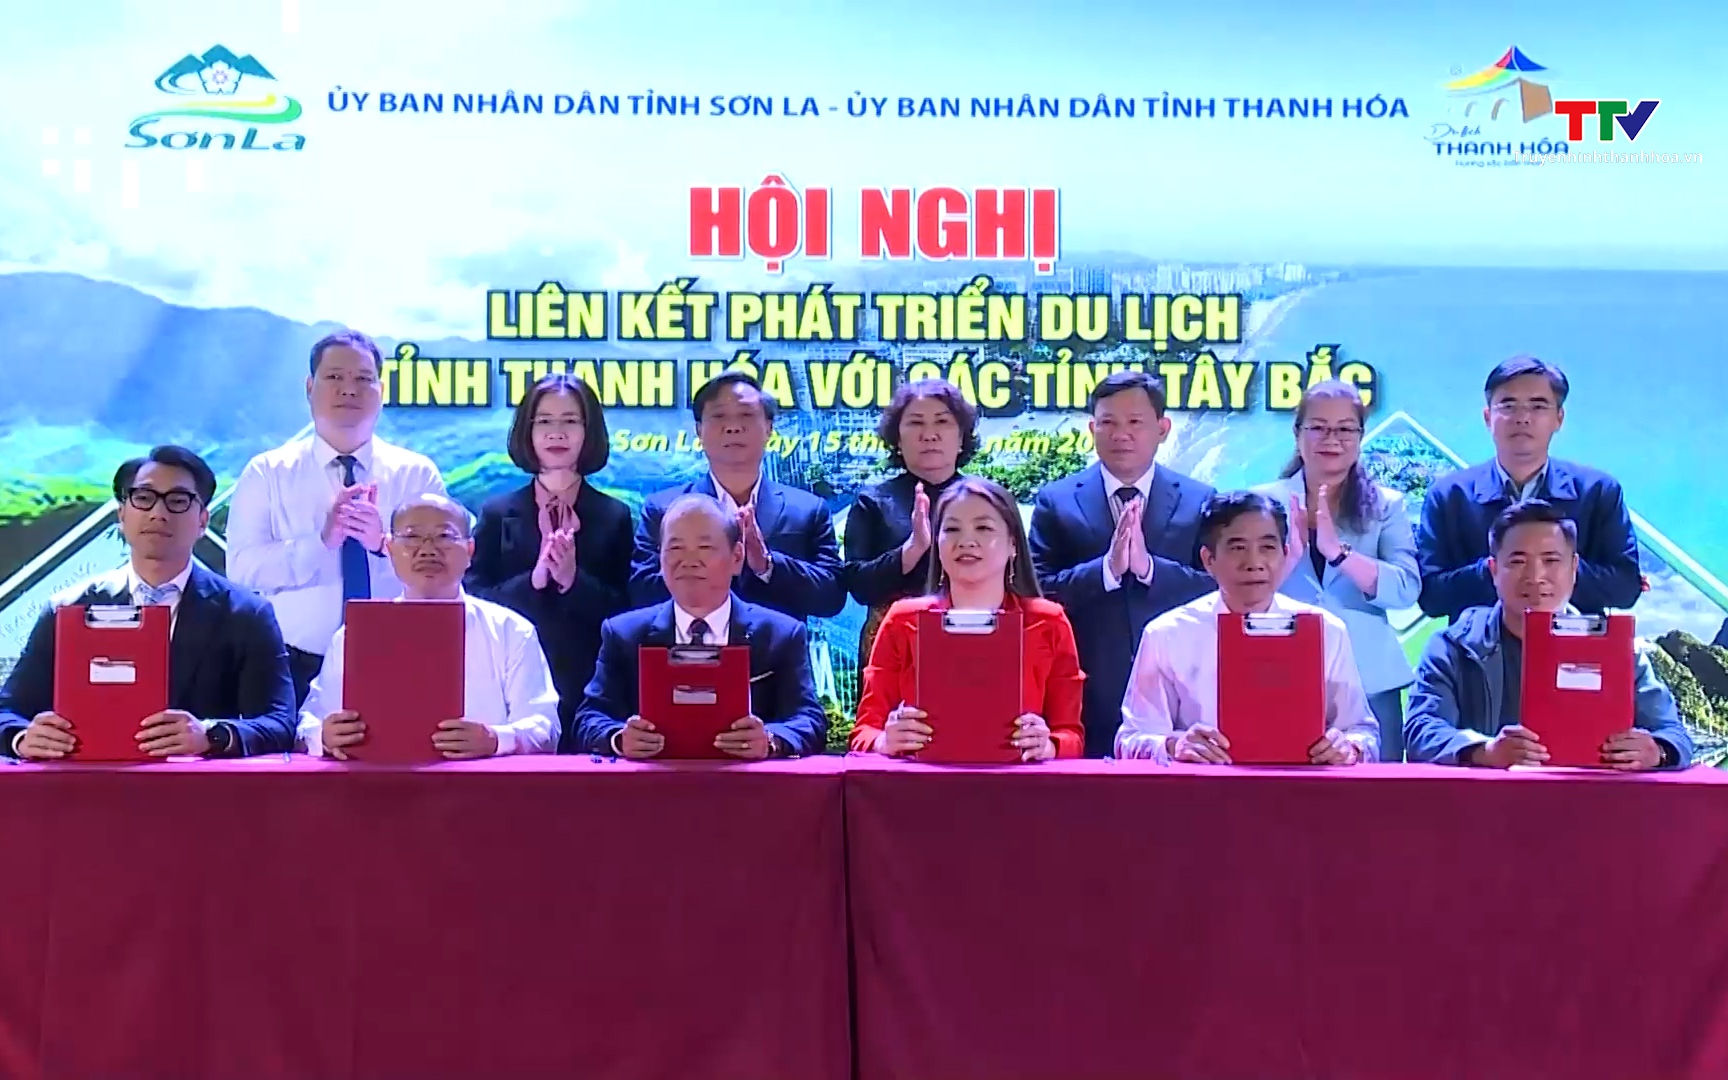 Hội nghị liên kết phát triển du lịch tỉnh Thanh Hoá với các tỉnh Tây Bắc